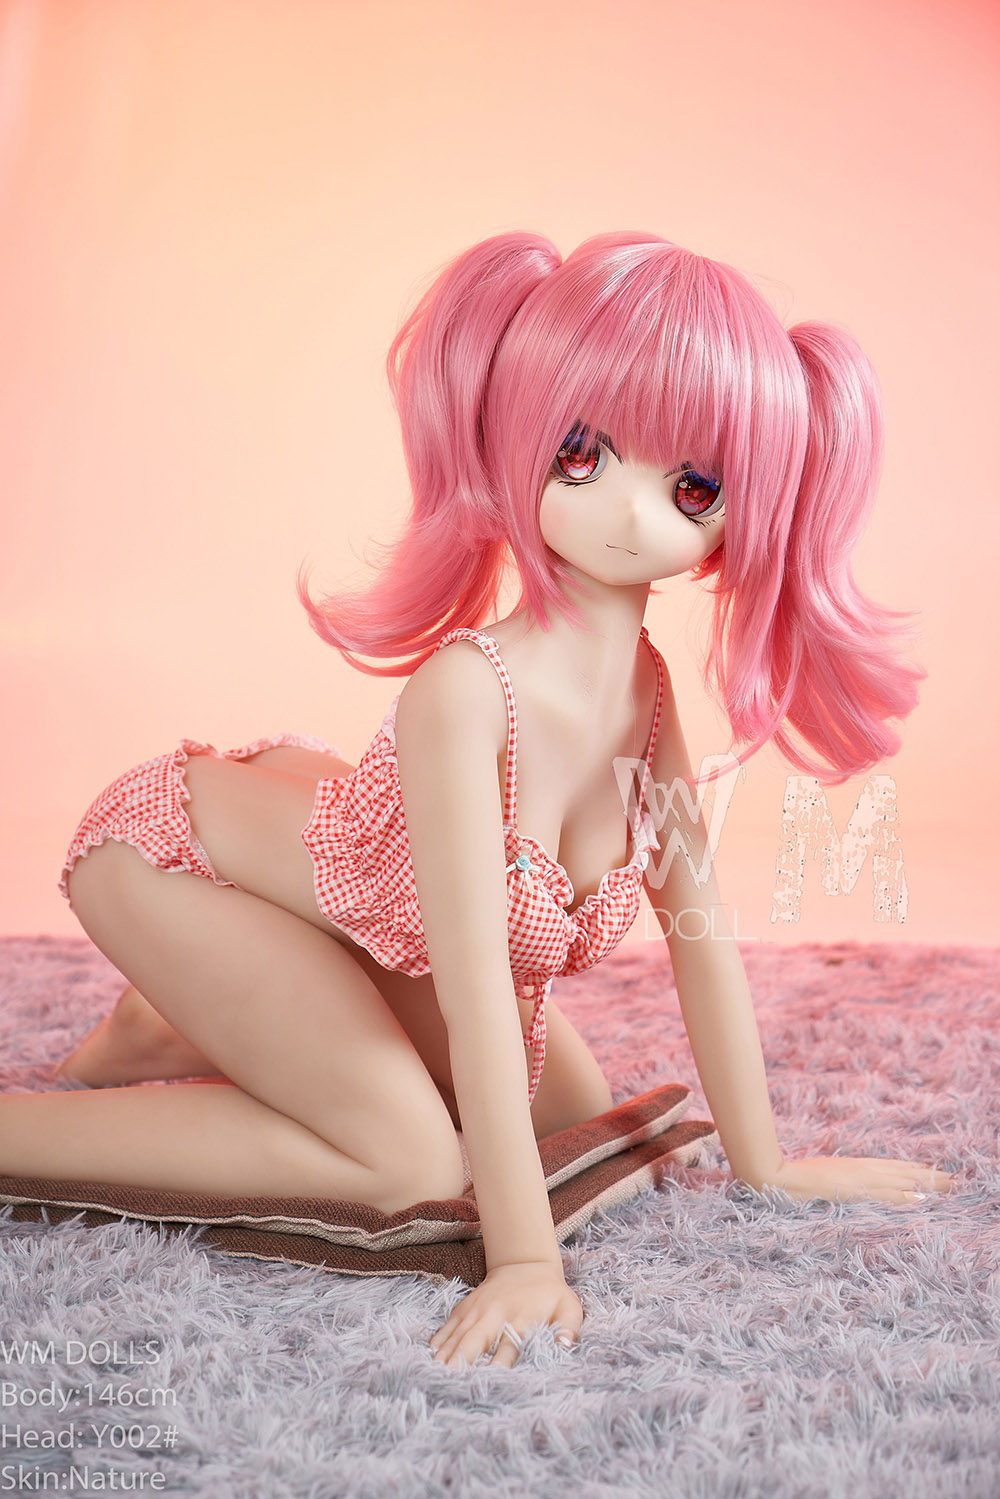 kneeling pink hair loli doll